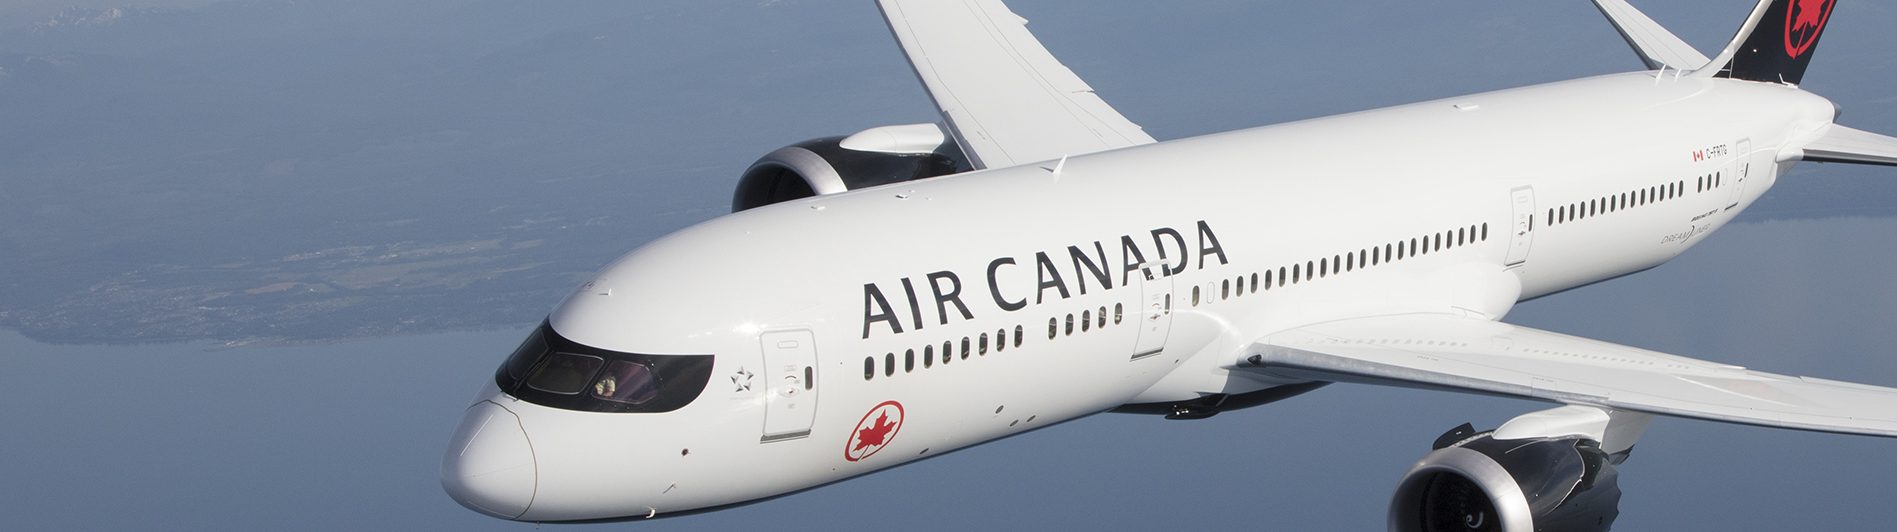 La Fundación Air Canada buscará recaudar 300 mil dólares para donar a hospitales